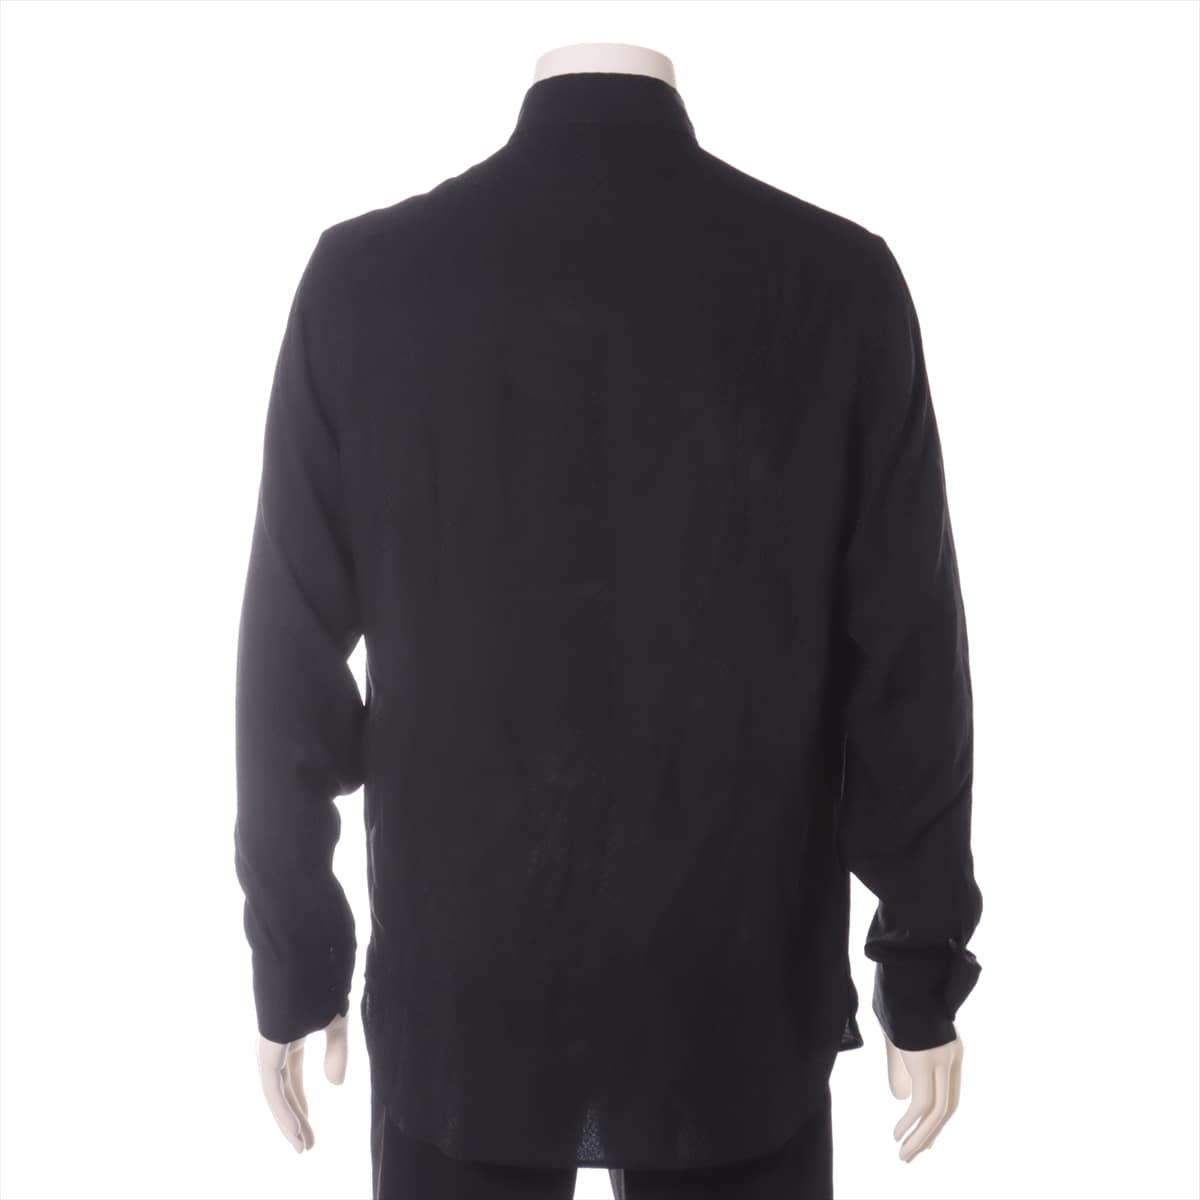 Saint Laurent Paris 19AW Silk Shirt 38 Men's Black  564172